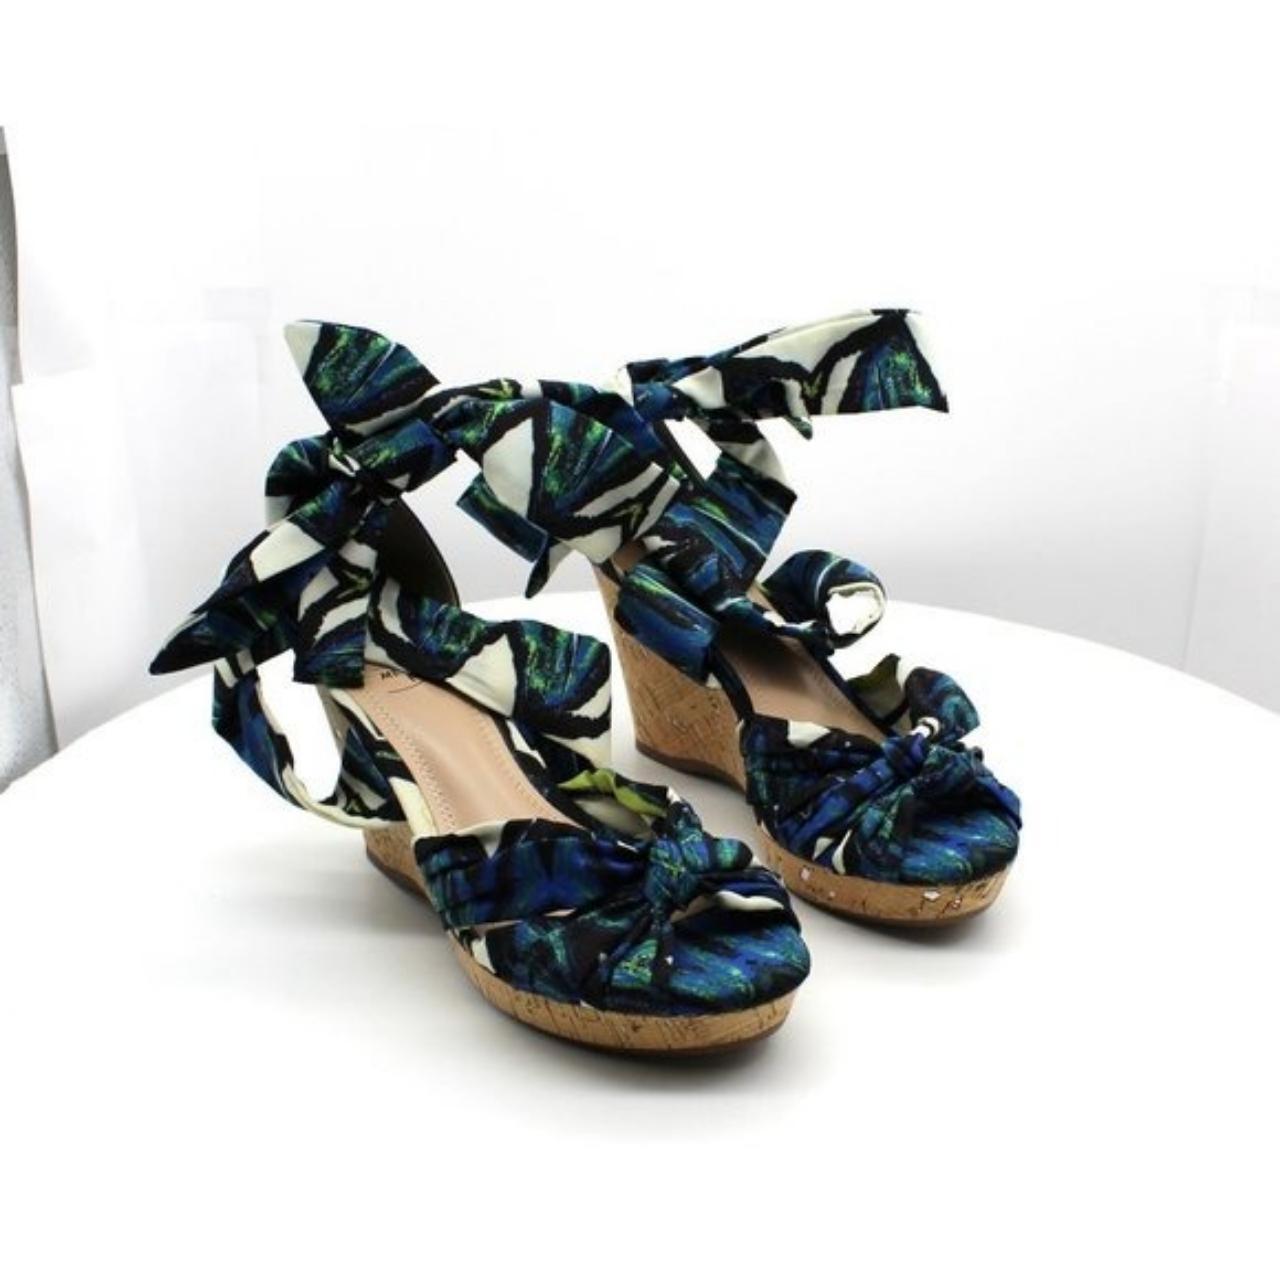 Product Image 1 - Impo Ohanna Wedge Sandal Women's